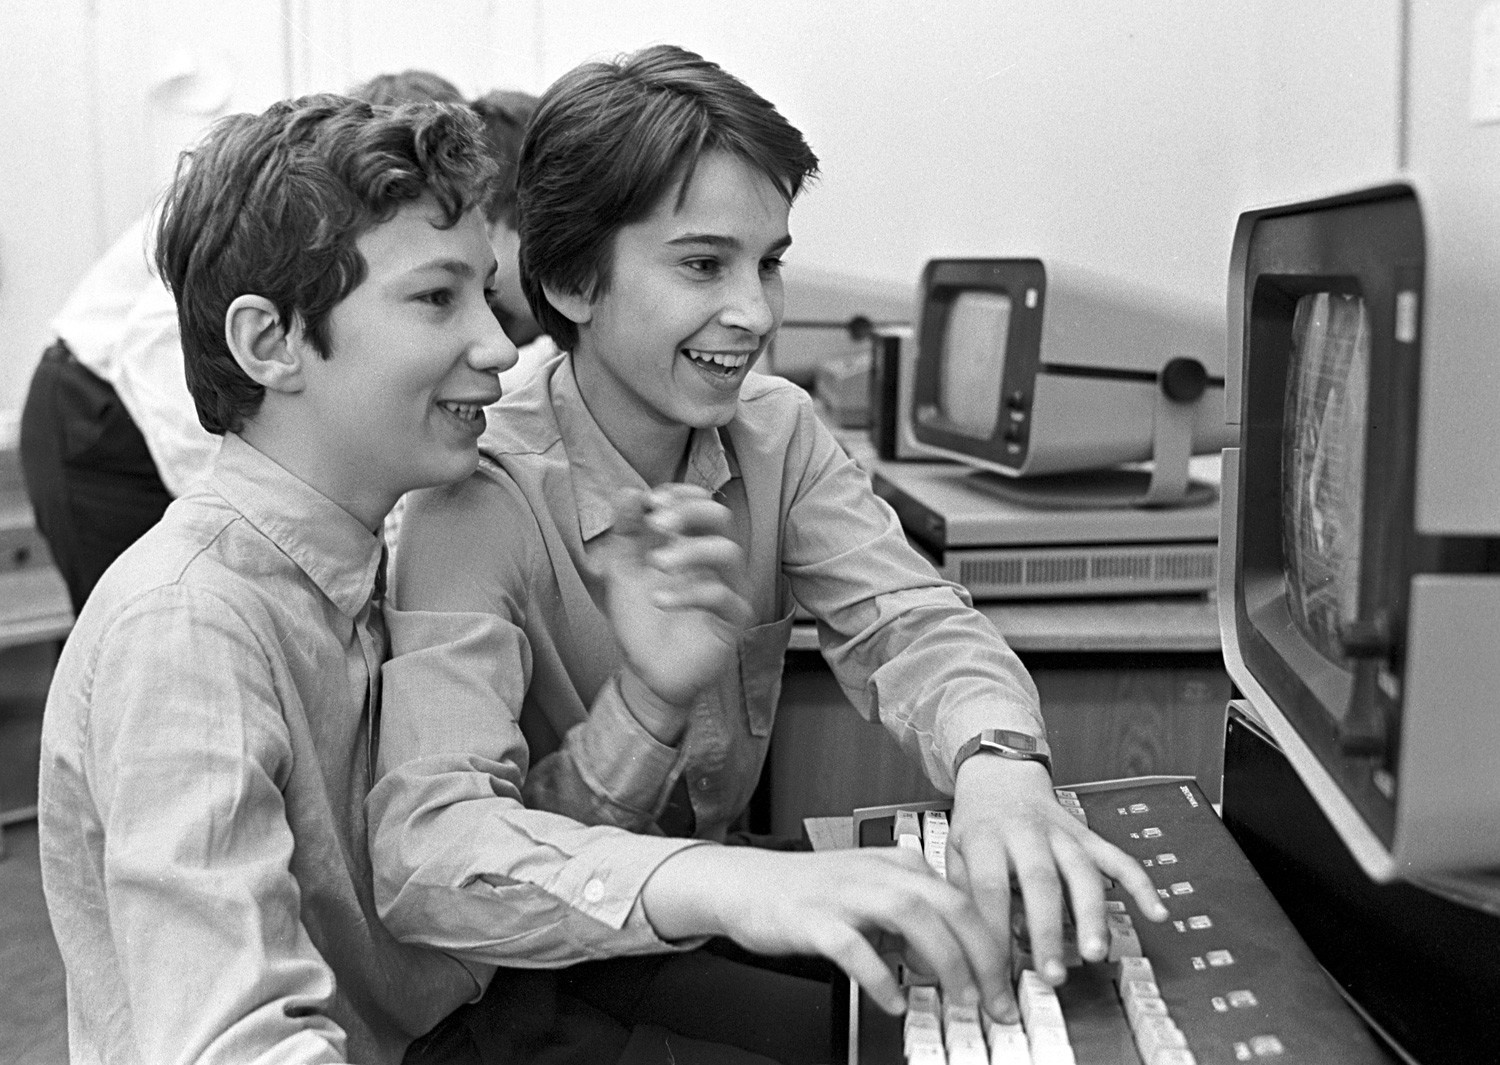 Sovjetski šolarji se učijo dela za računalnikom na uri informatike (1985)